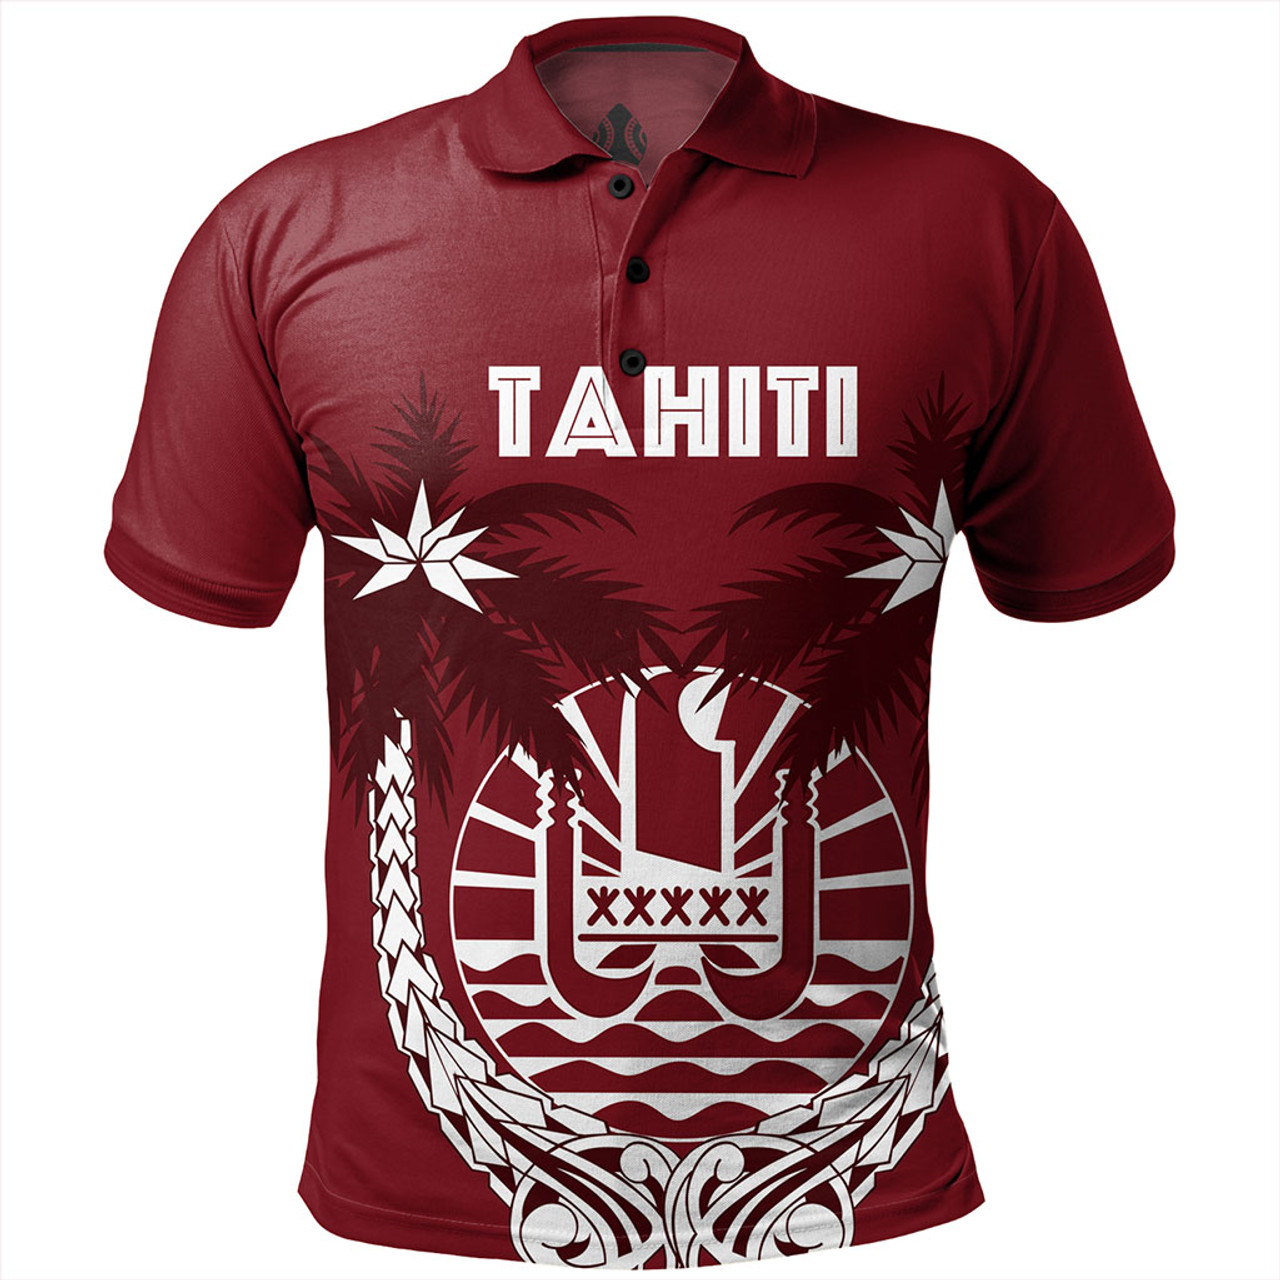 Tahiti Polo Shirt Coat Of Arms Coconut